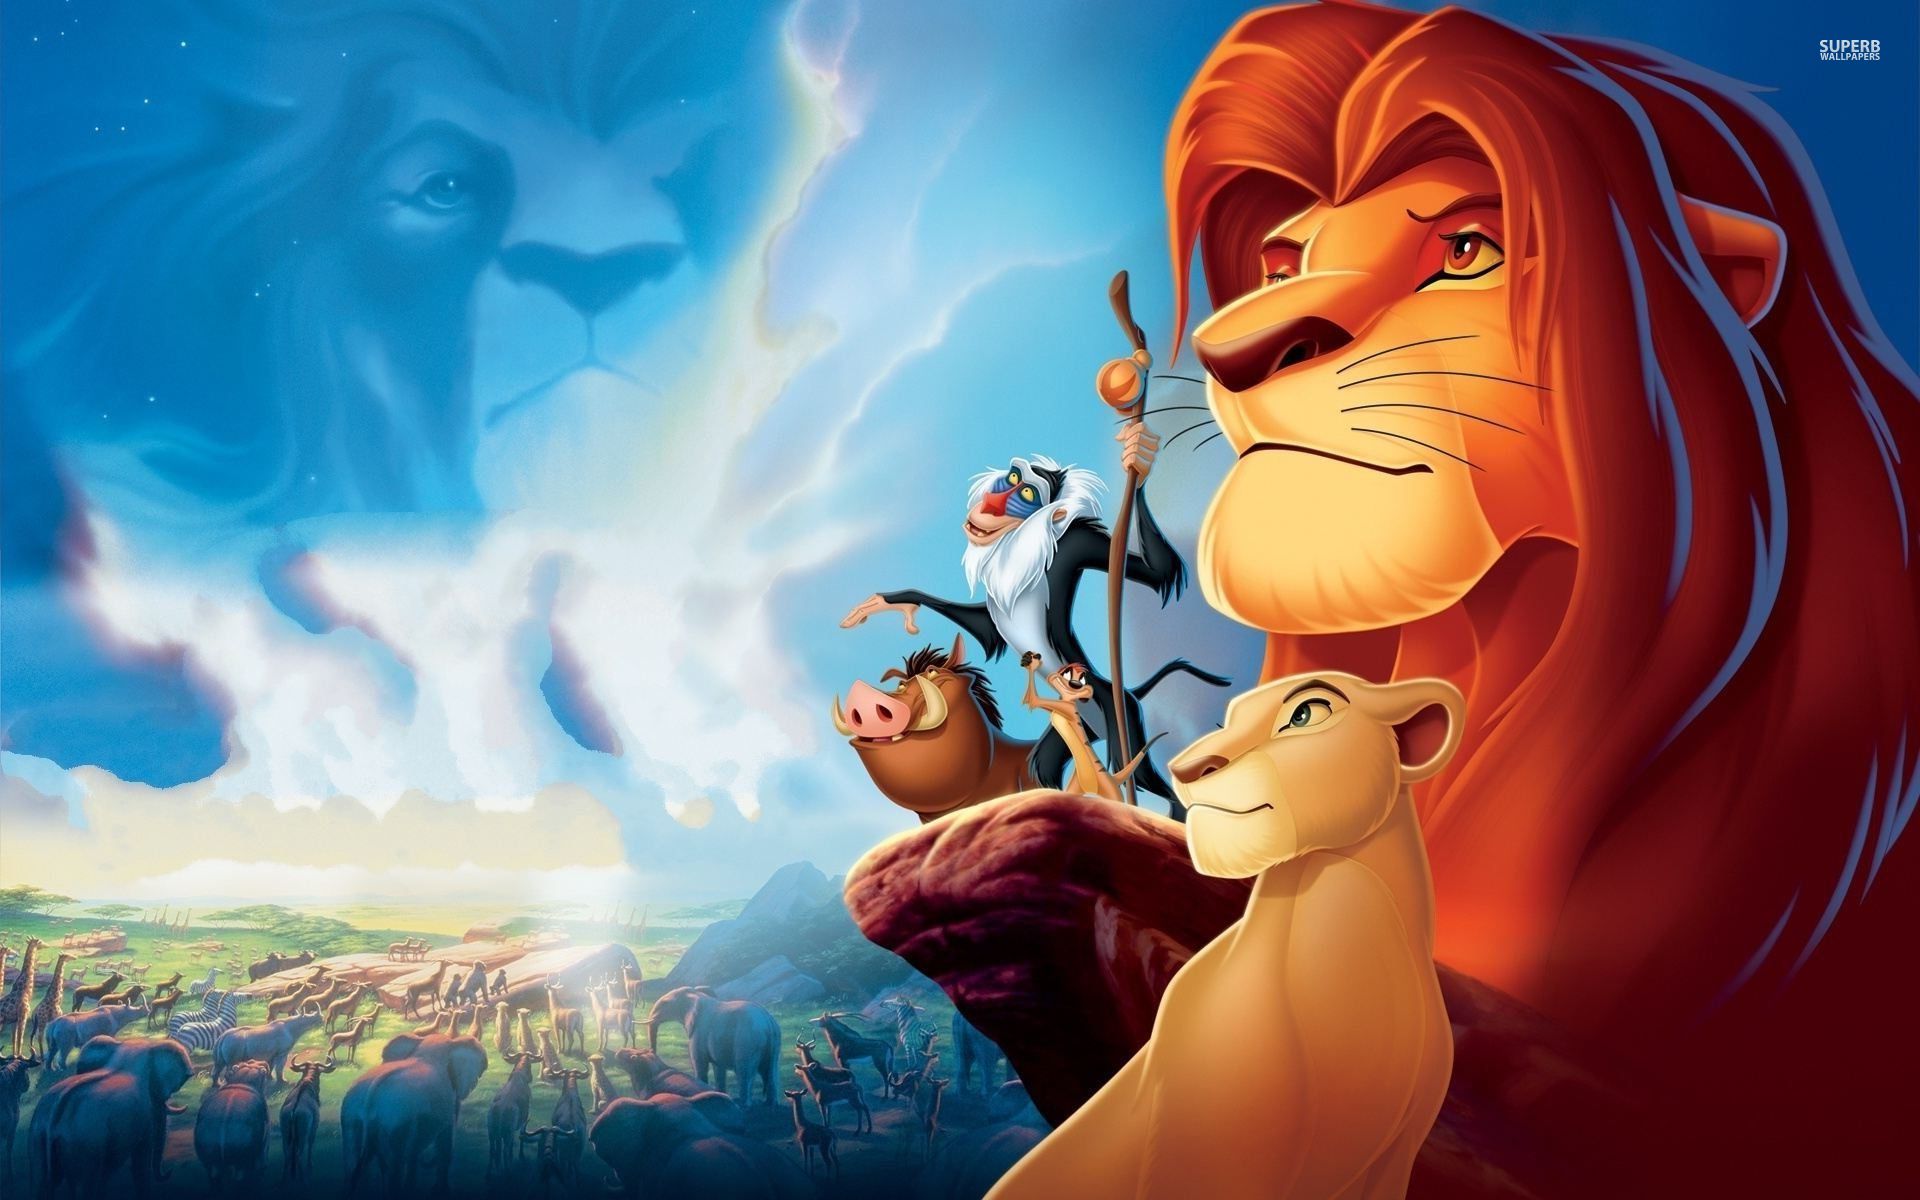 fond d'écran du roi lion,dessin animé,dessin animé,illustration,animation,lion